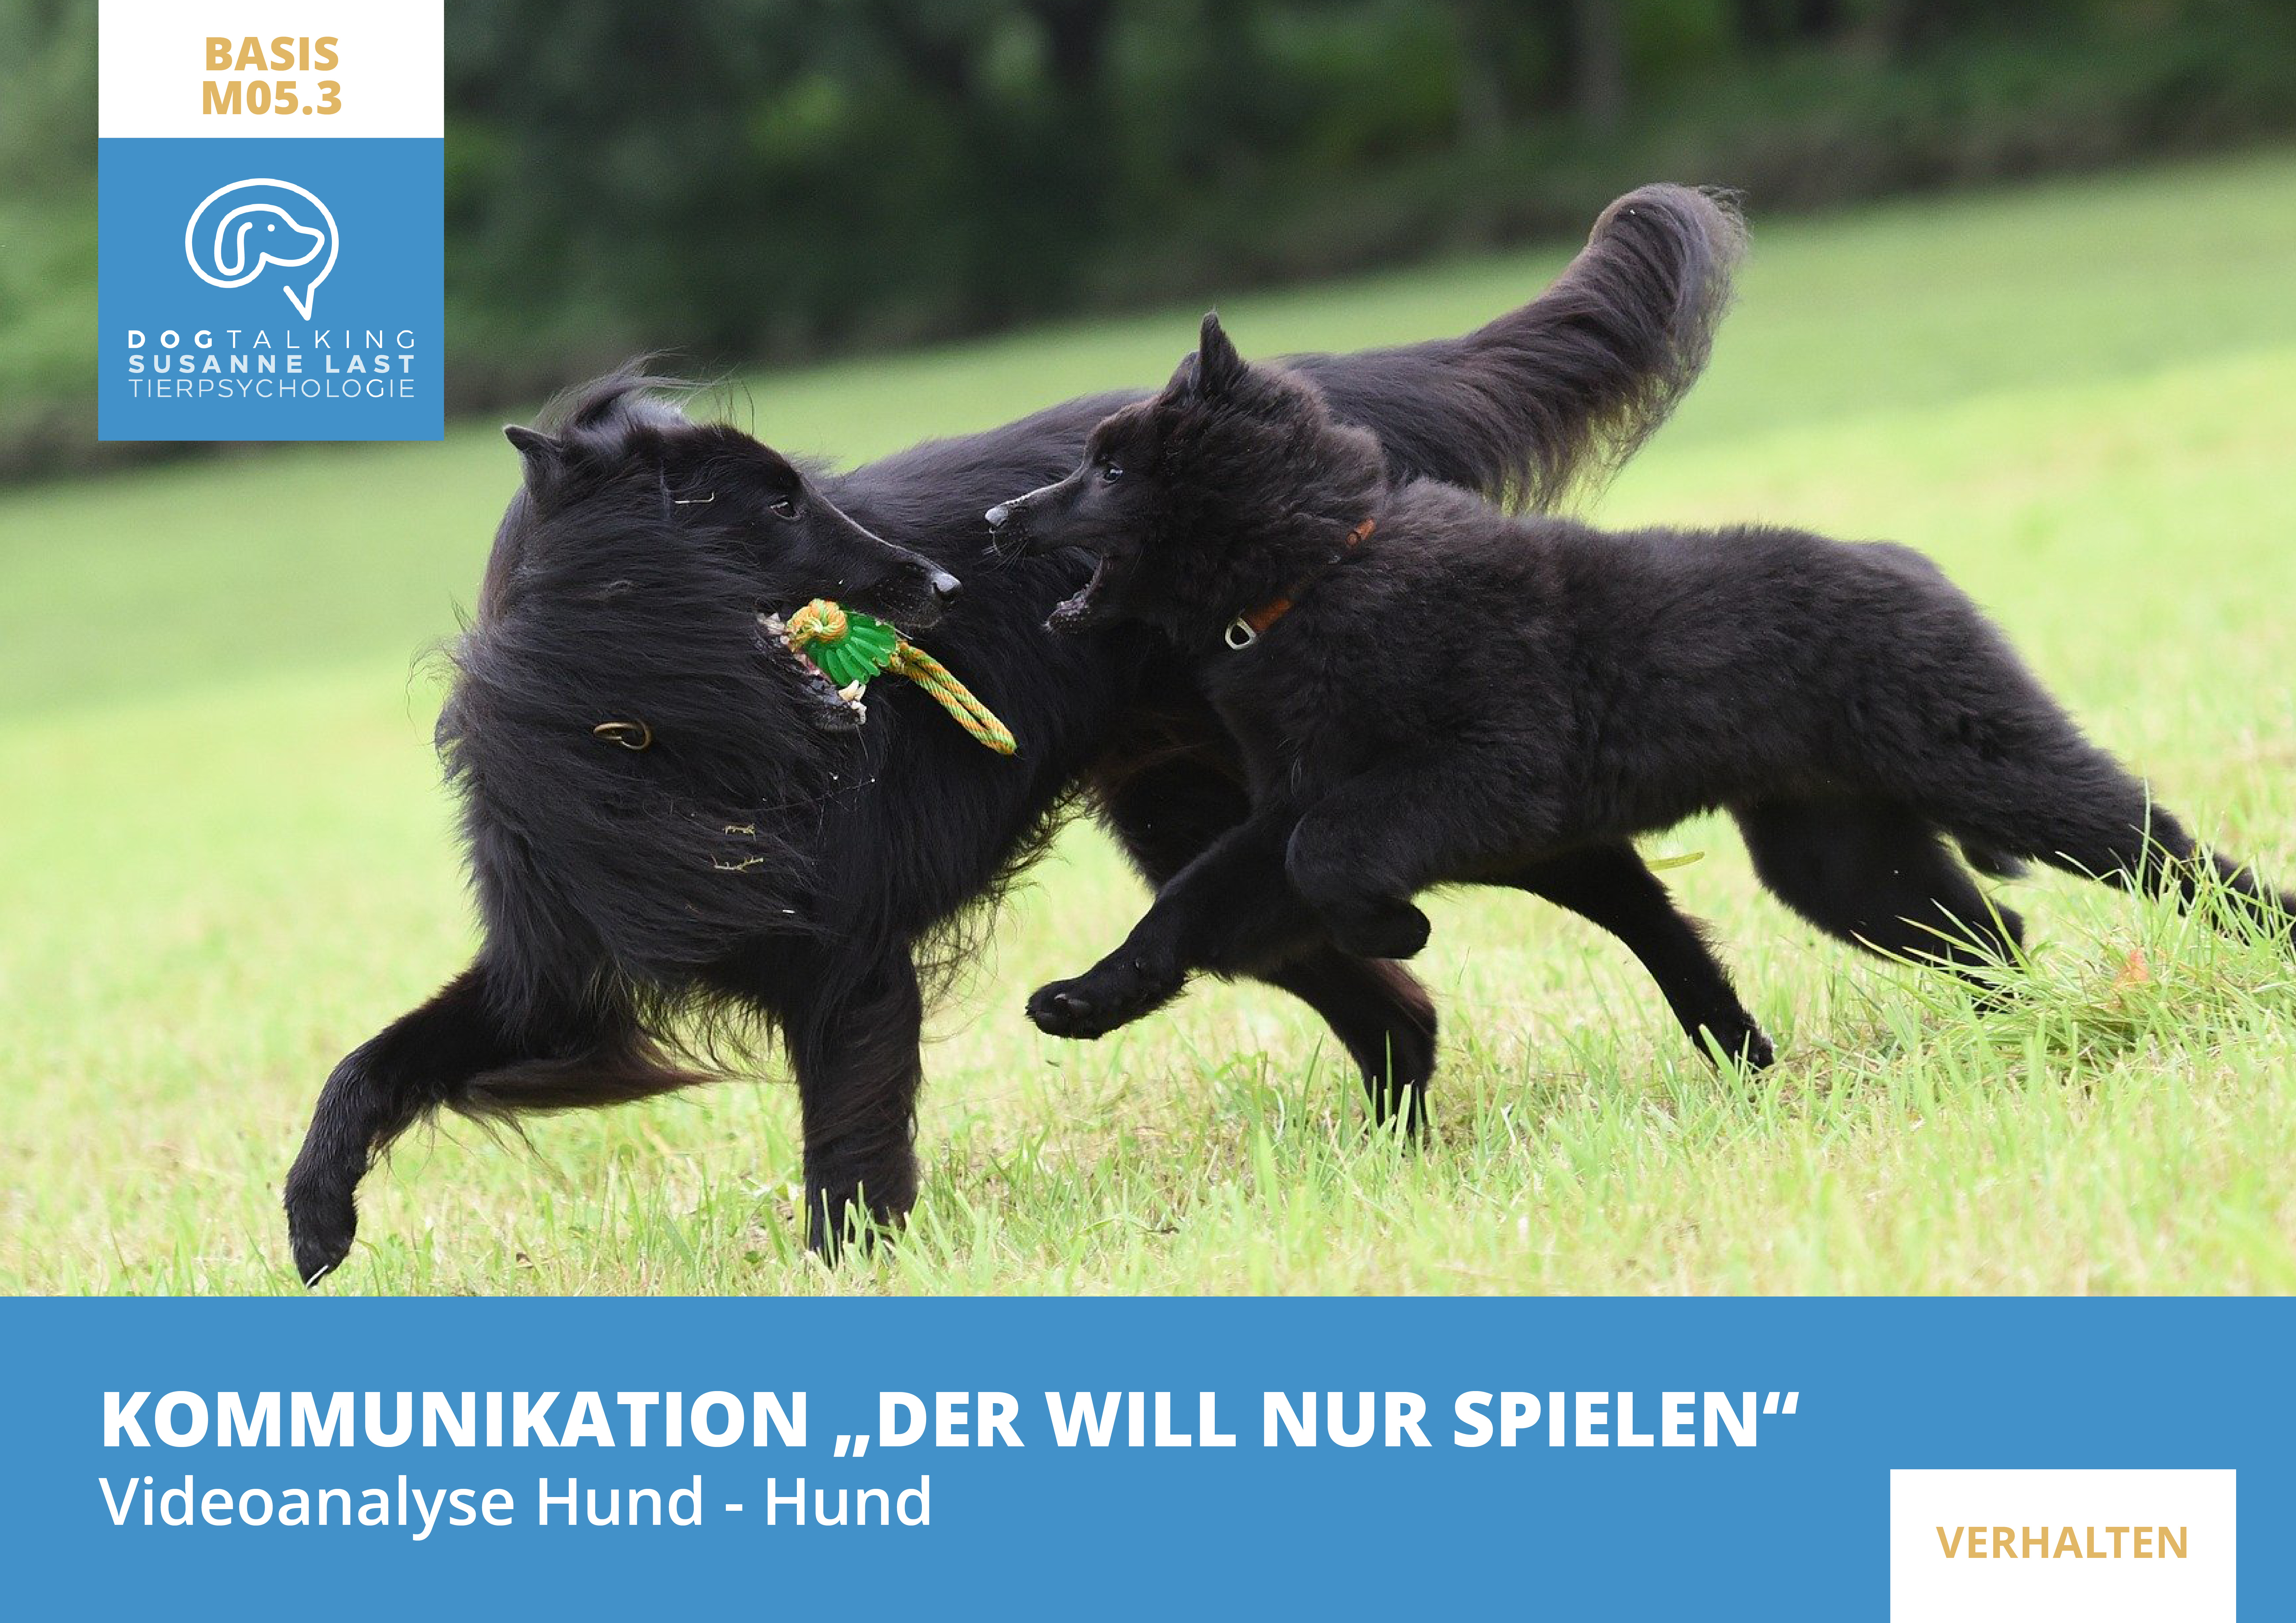 M05.3 Videoanalysen I Kommunikation "Der will nur spielen!"  Videoanalyse Hund-Hund